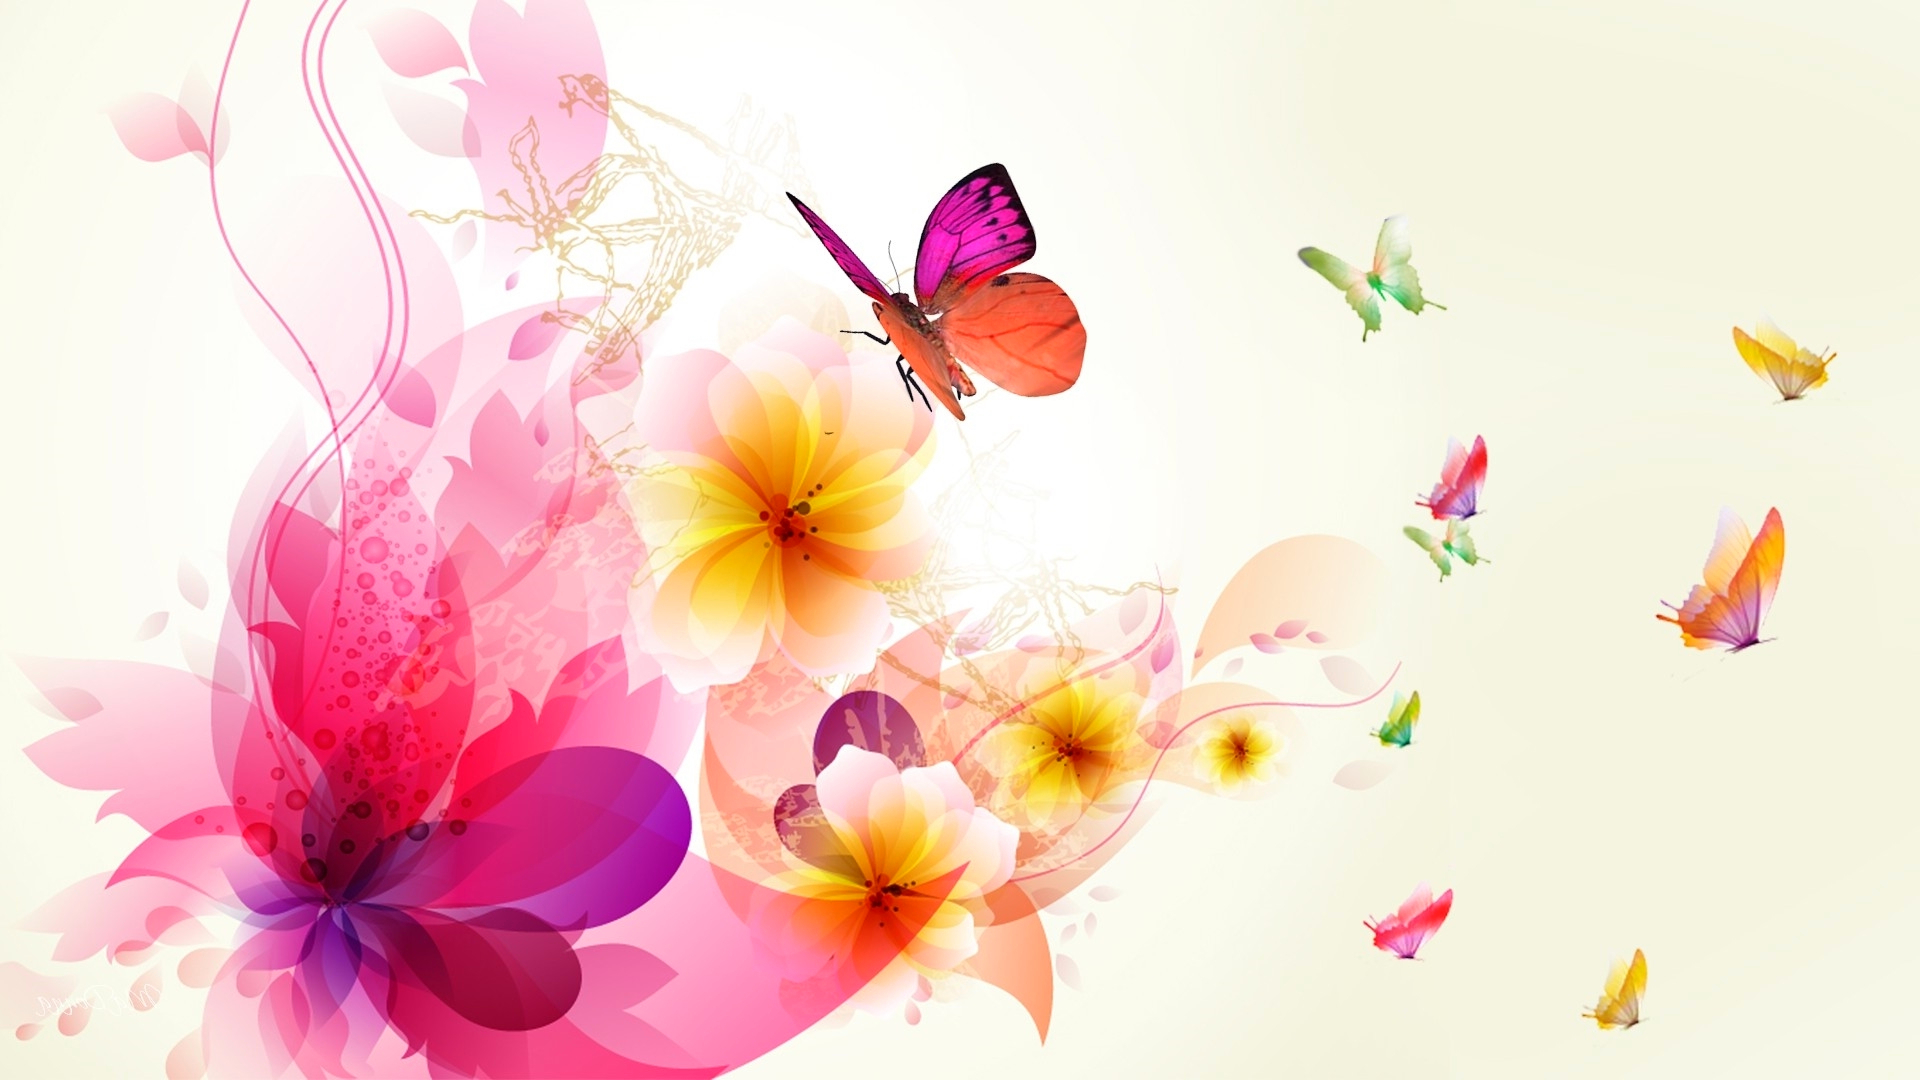 Скачать обои бесплатно Цветок, Белый, Бабочка, Красочный, Весна, Художественные картинка на рабочий стол ПК